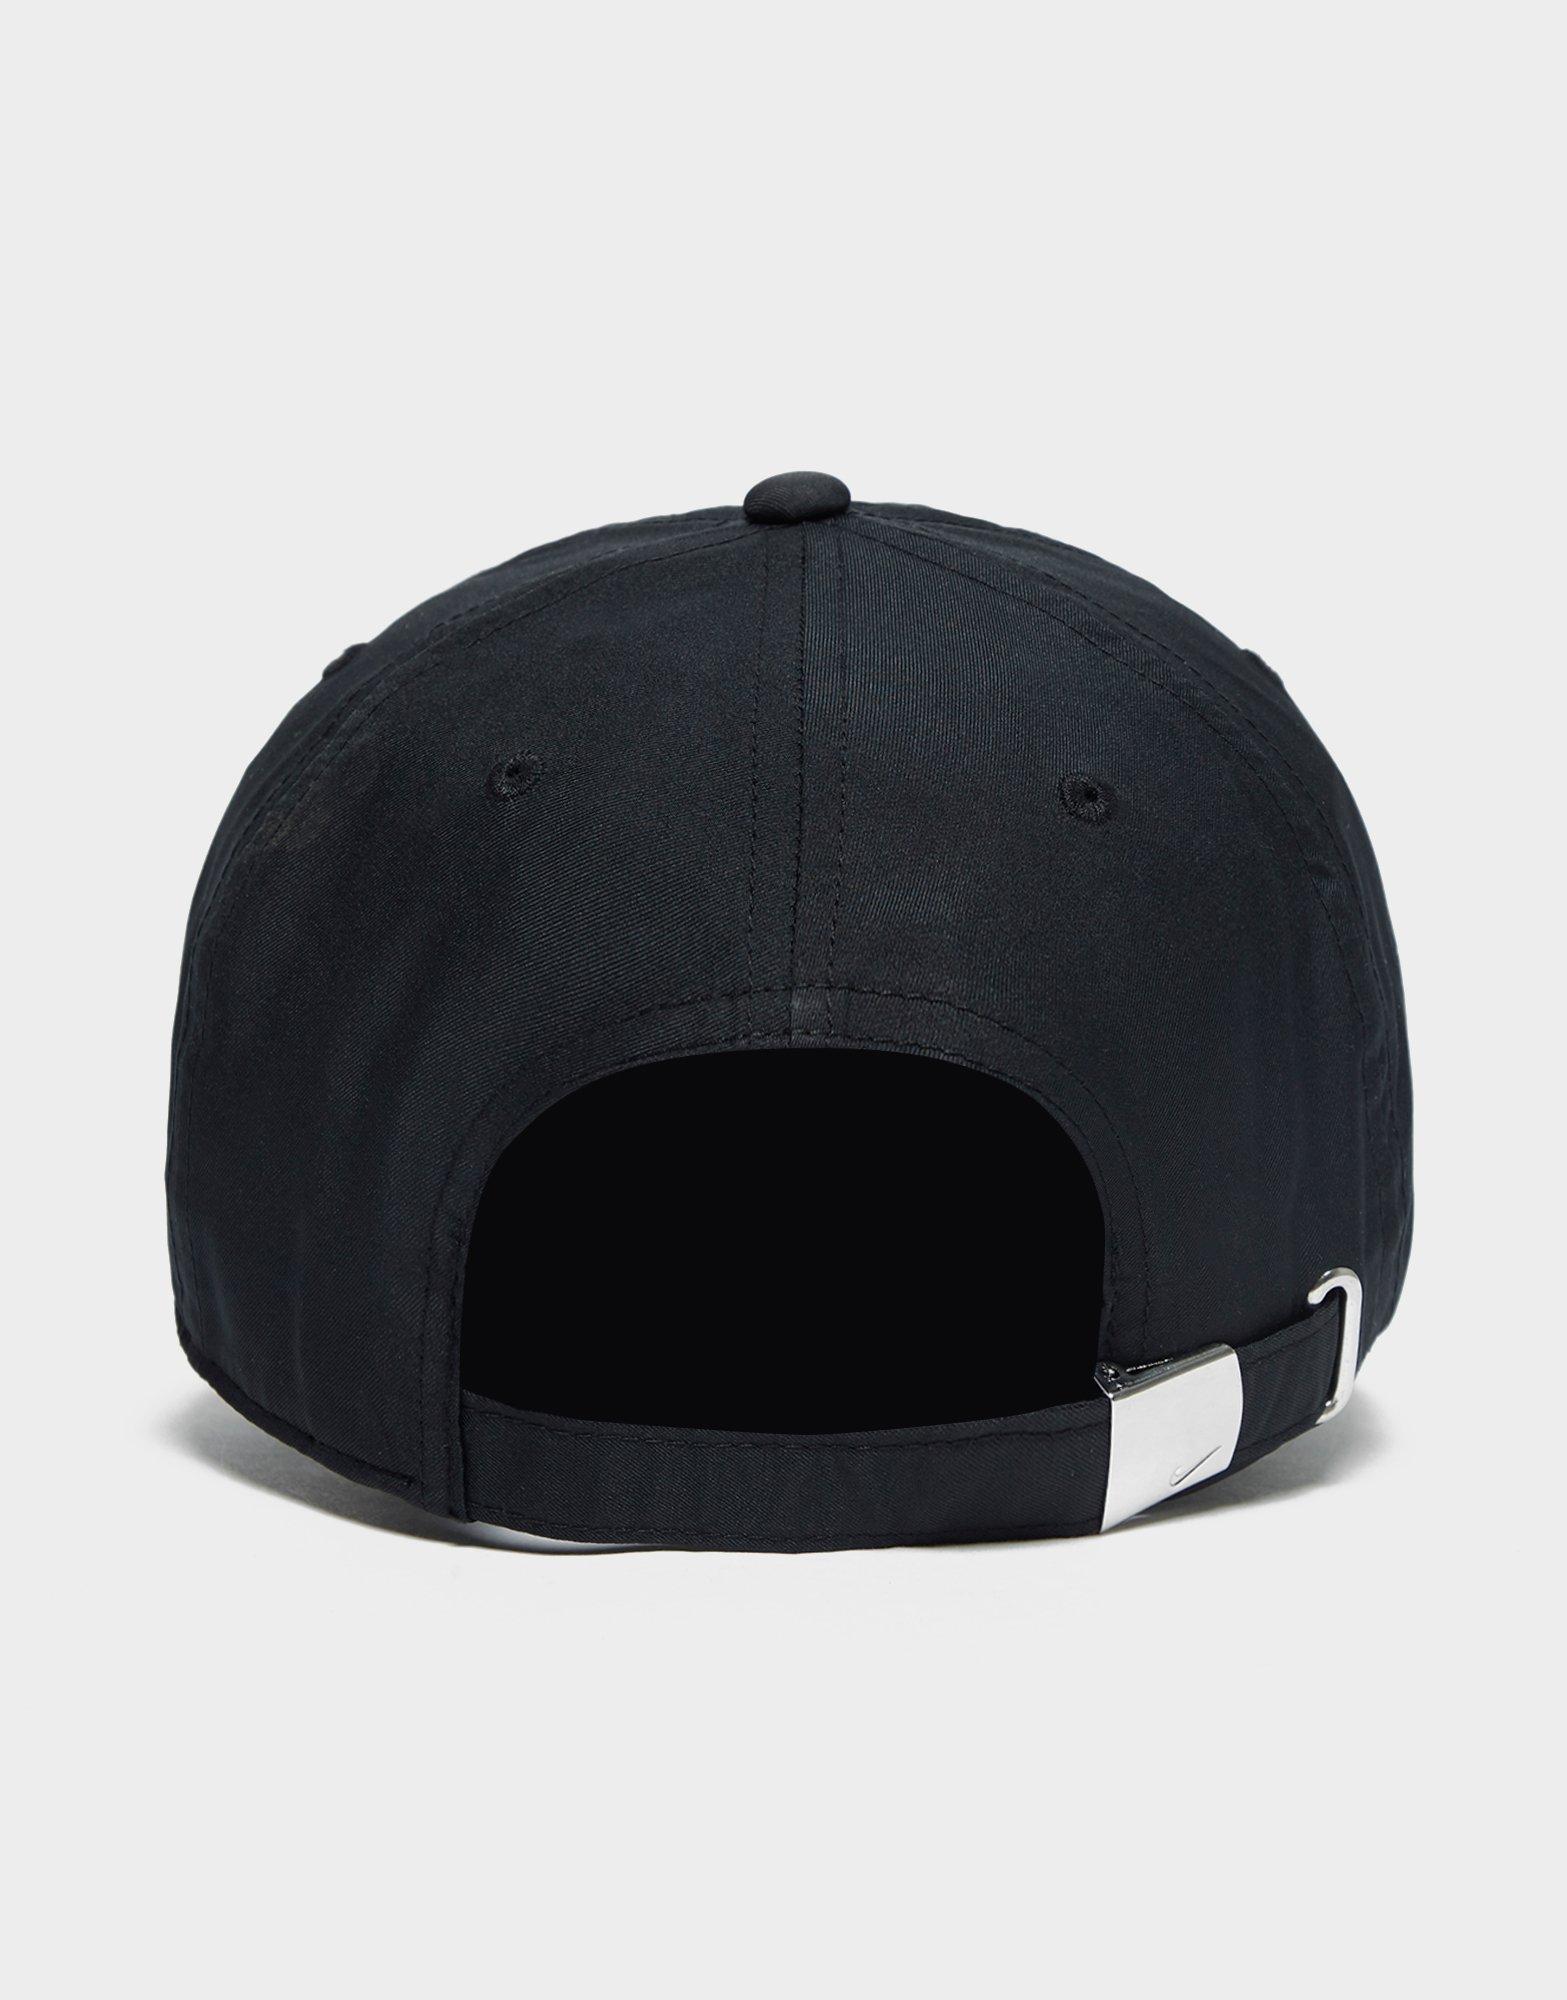 Nike Synthetic Side Swoosh Cap in Black for Men - Lyst